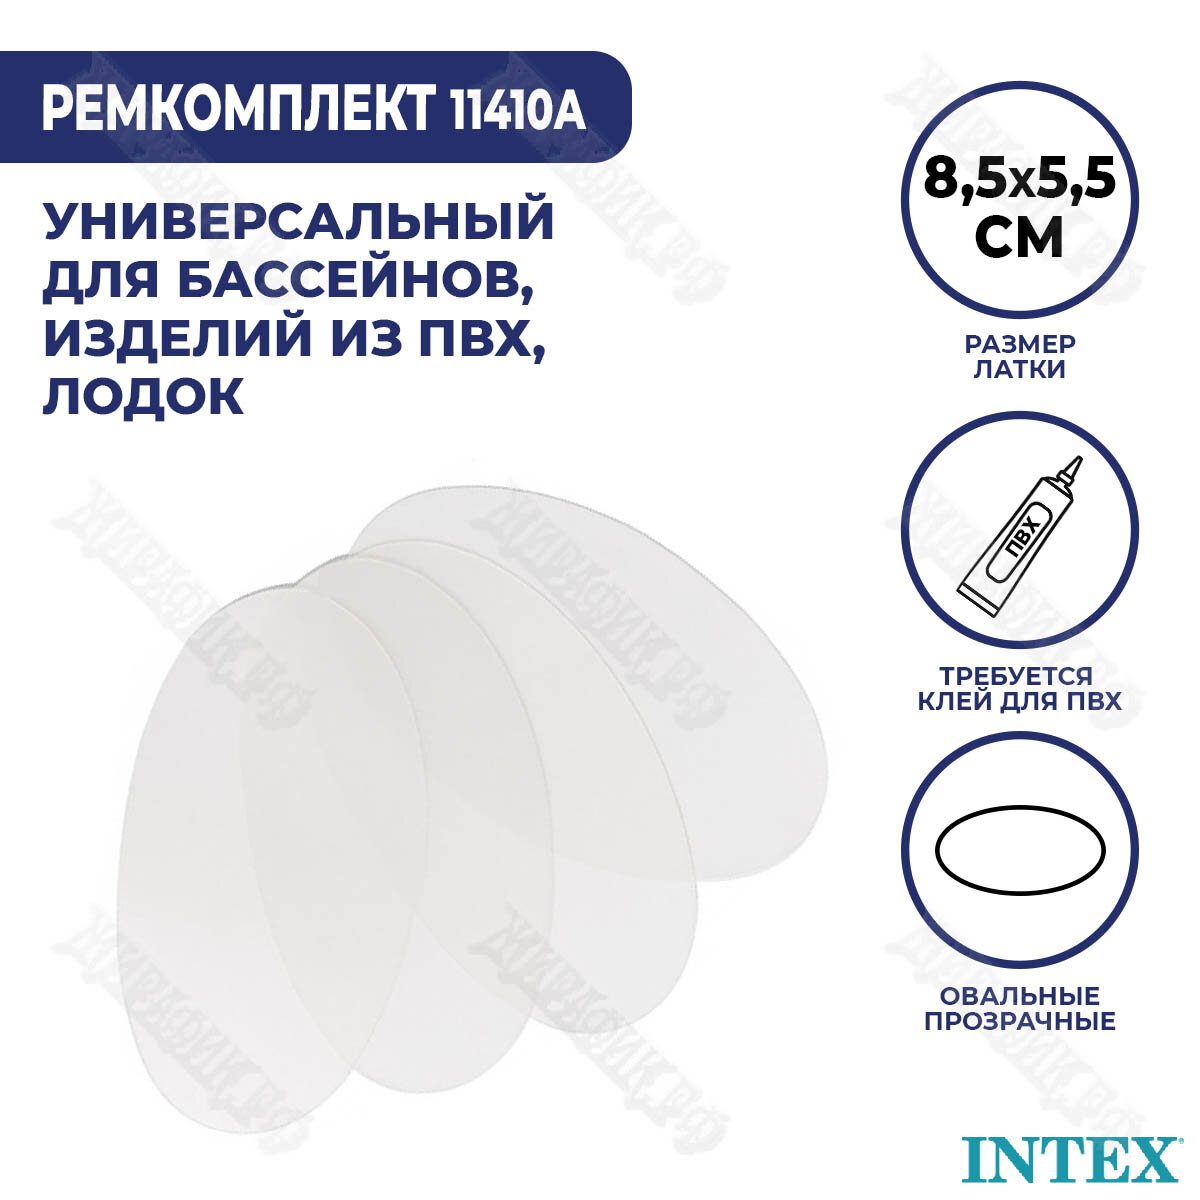 Набор заплаток 4 шт для ремонта надувных изделий из ПВХ без клея intex 11410А